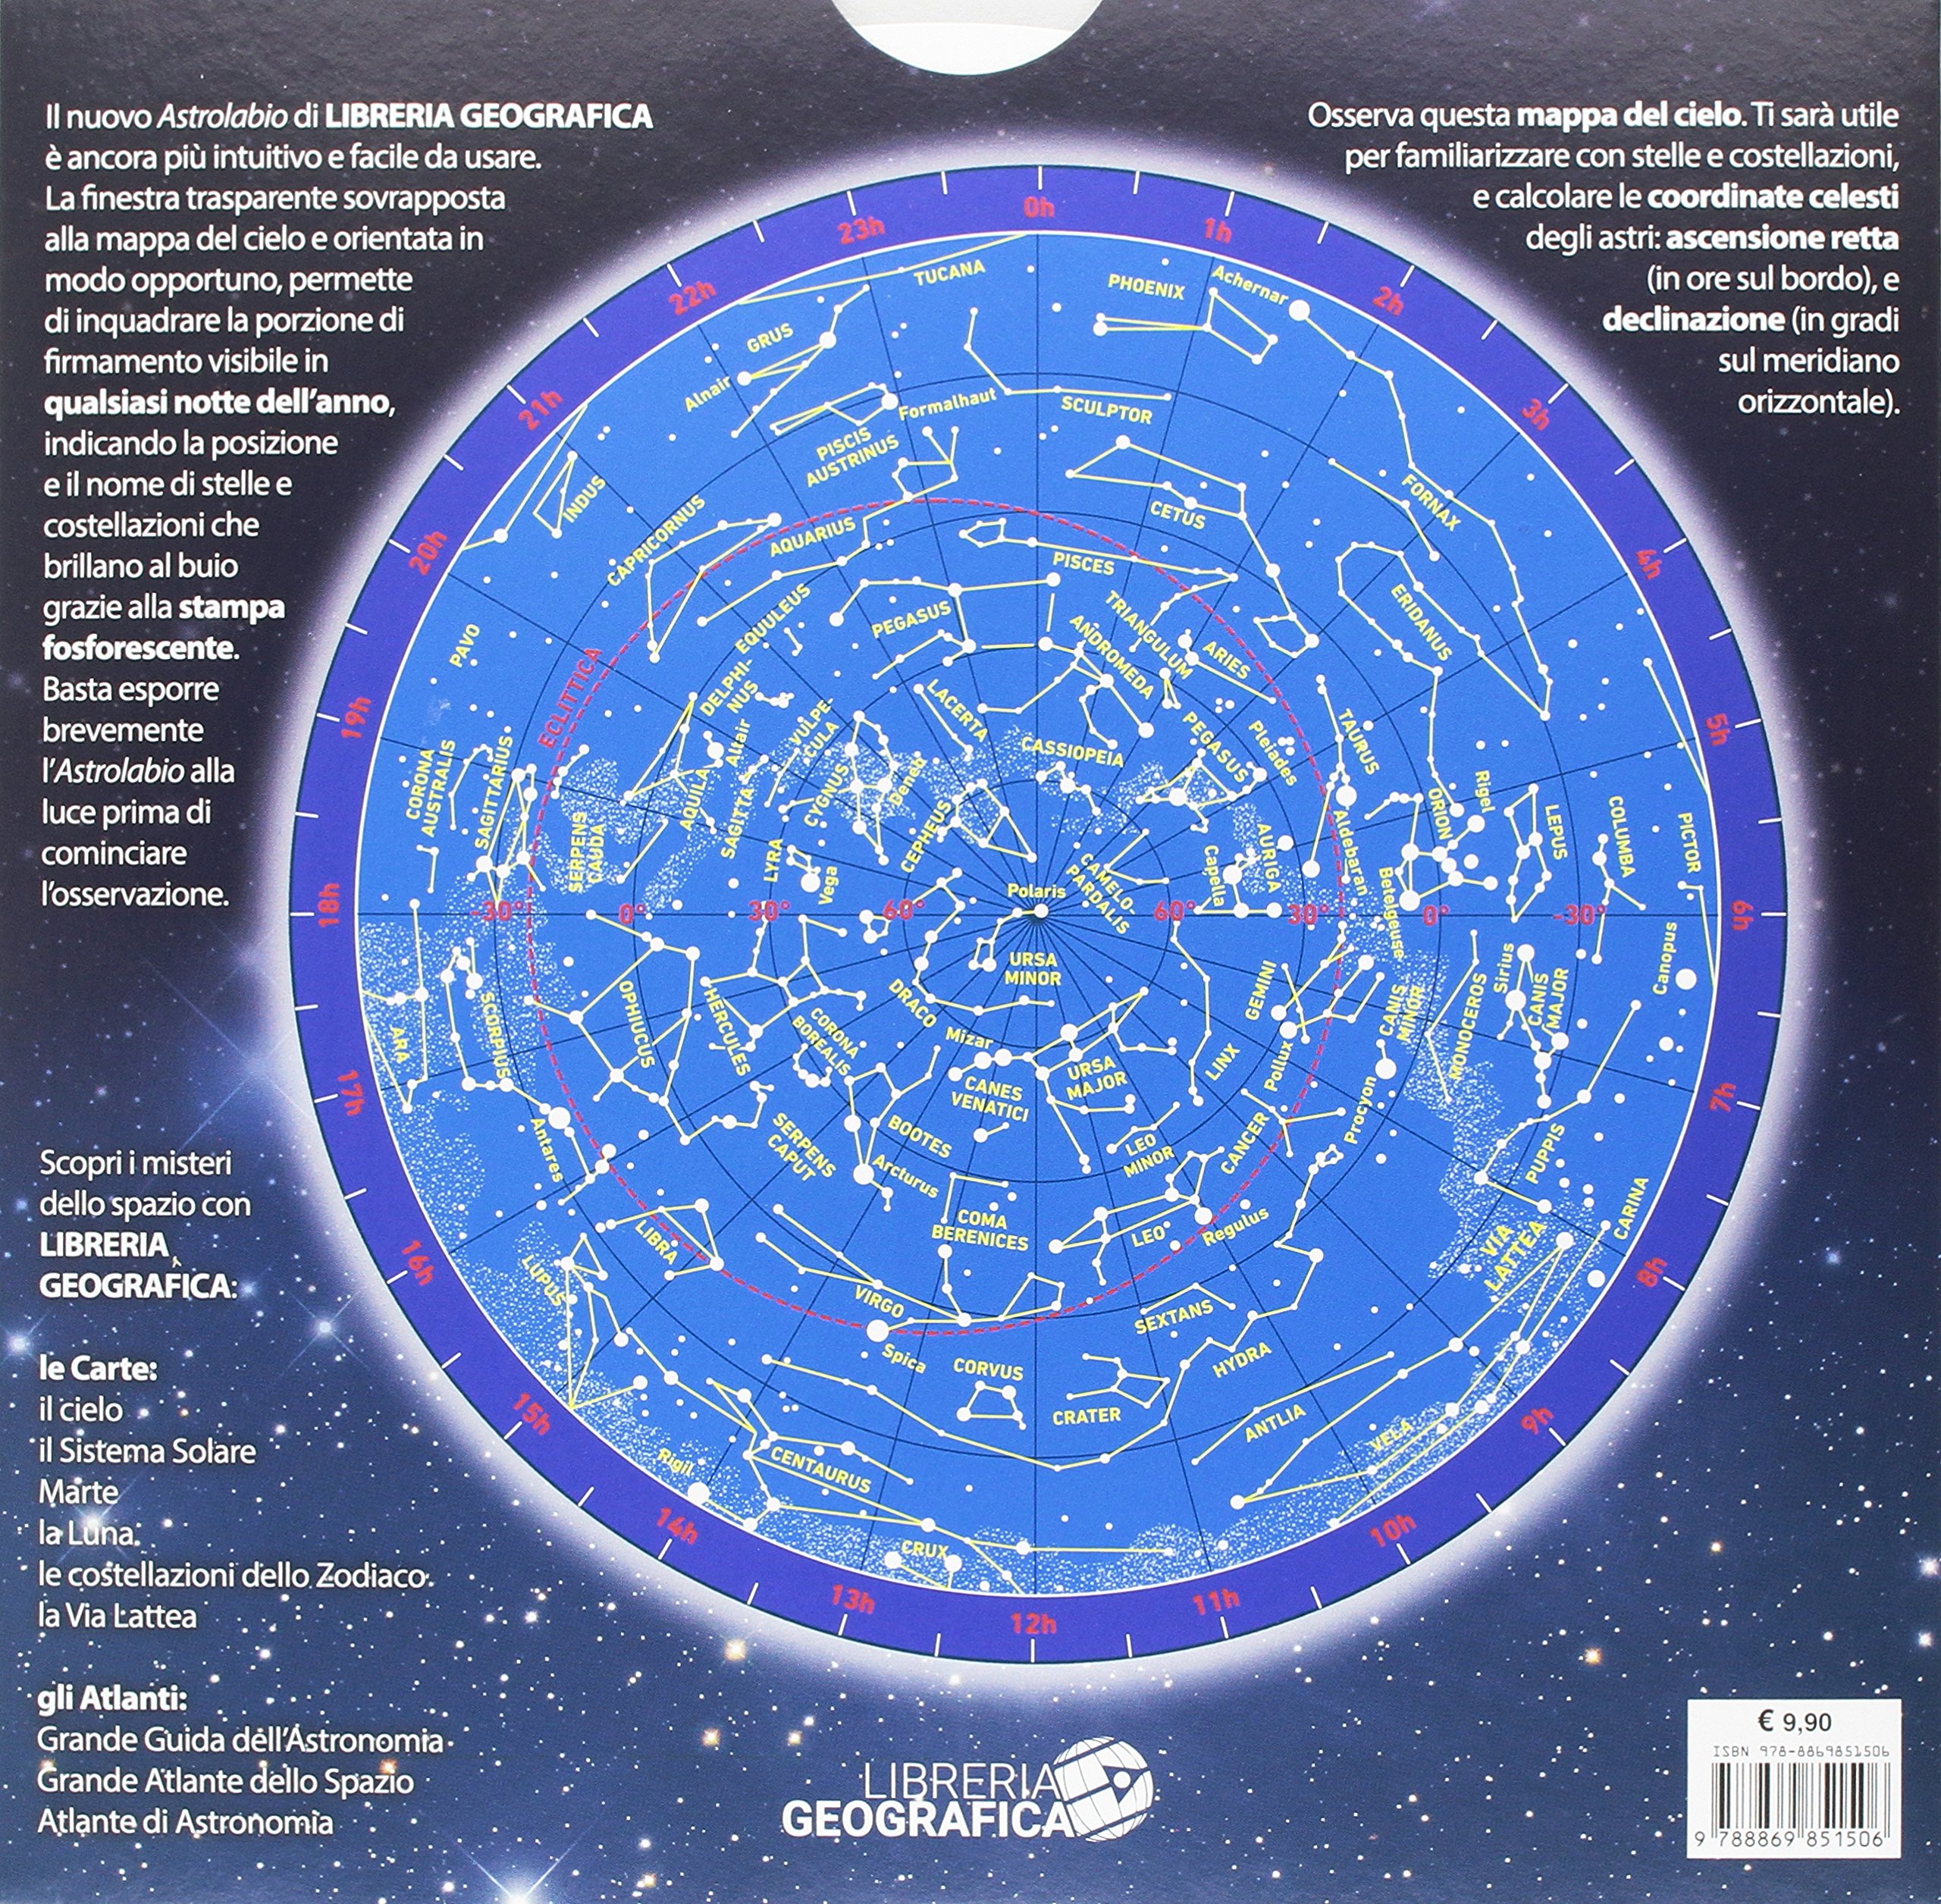 
L'astrolabio per riconoscere stelle e costellazioni: 1
